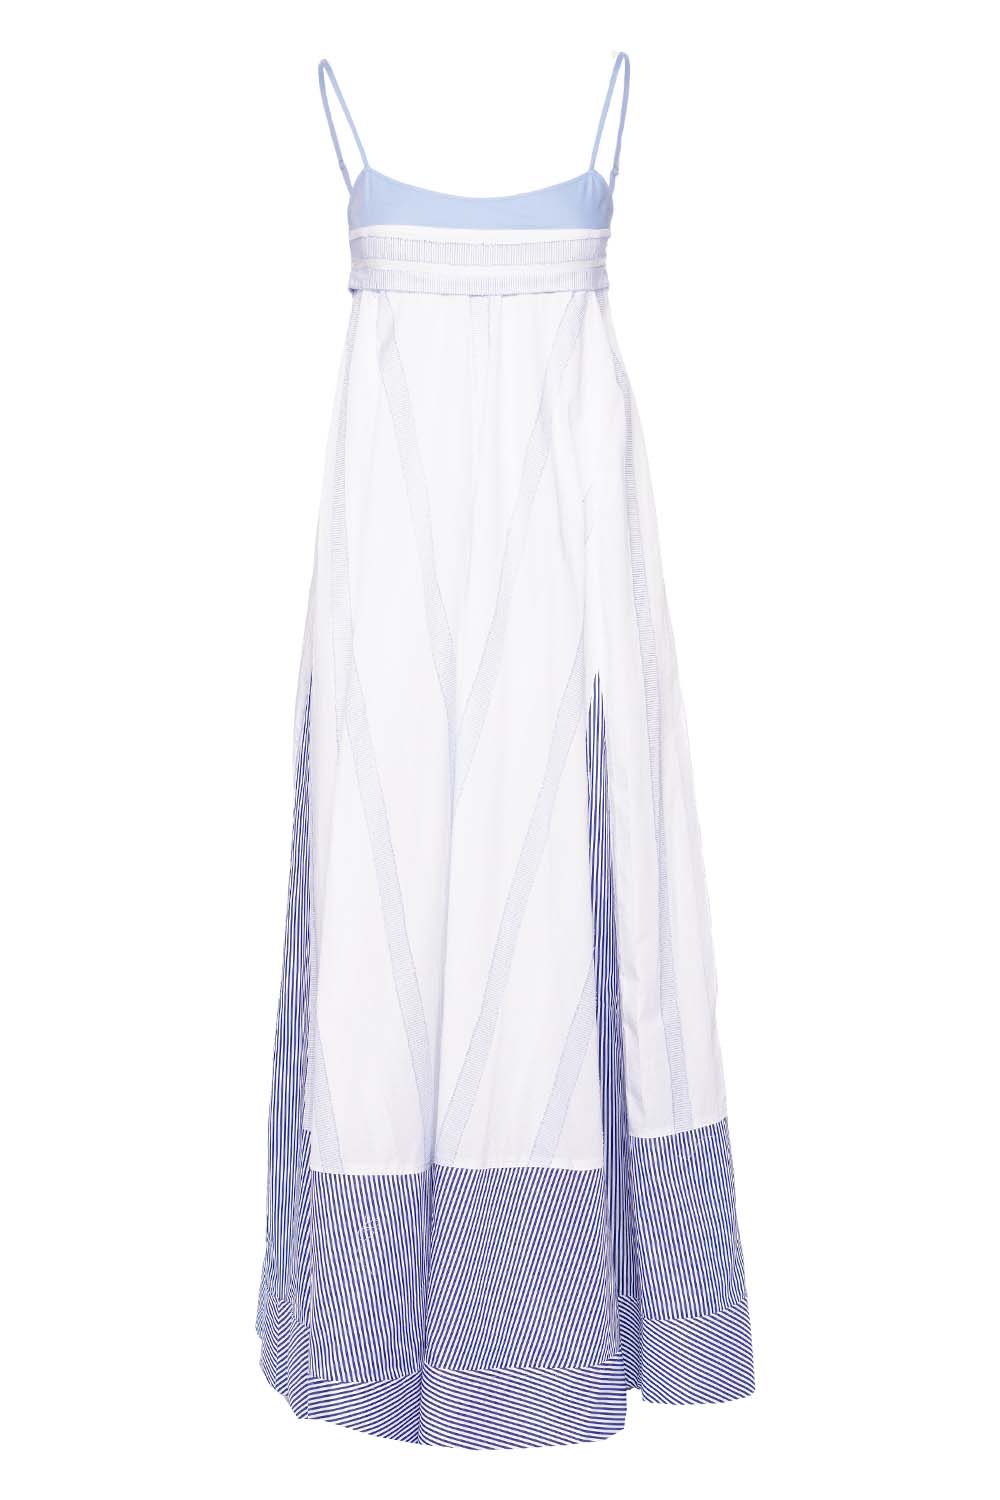 SIMKHAI Dixie Striped Cotton Maxi Dress